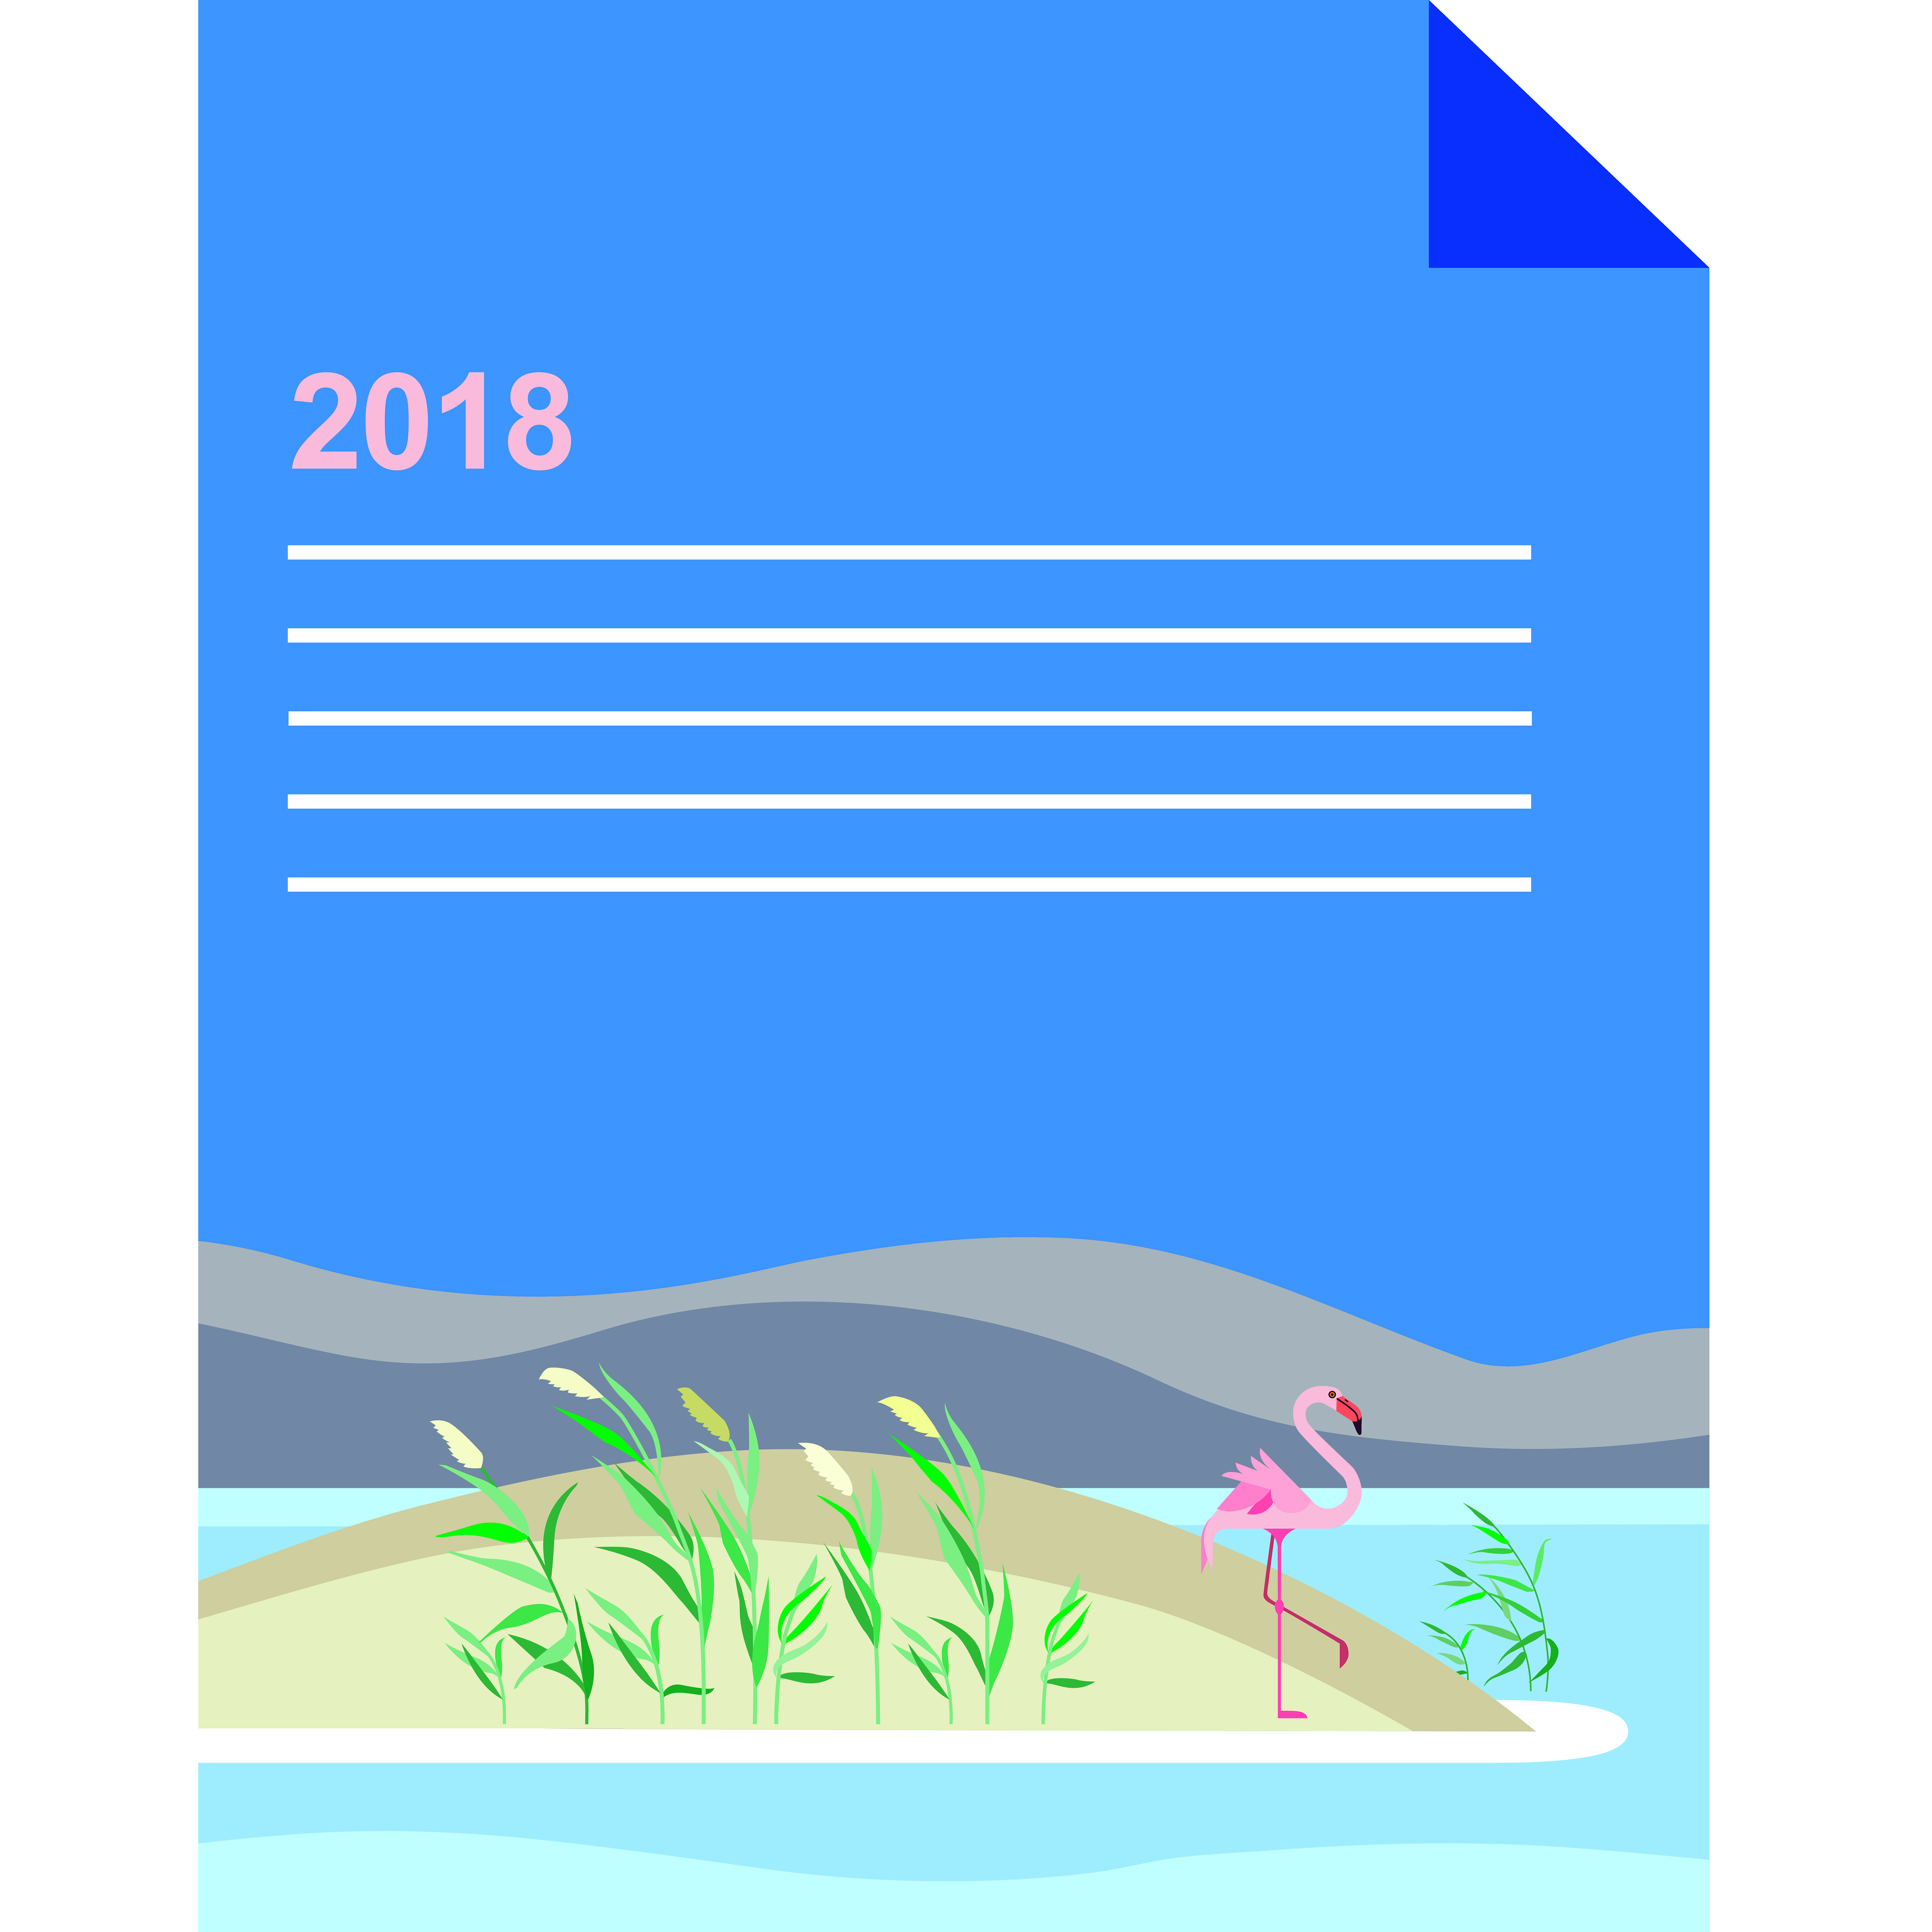 گزارش سالانه طرح در سال 2018